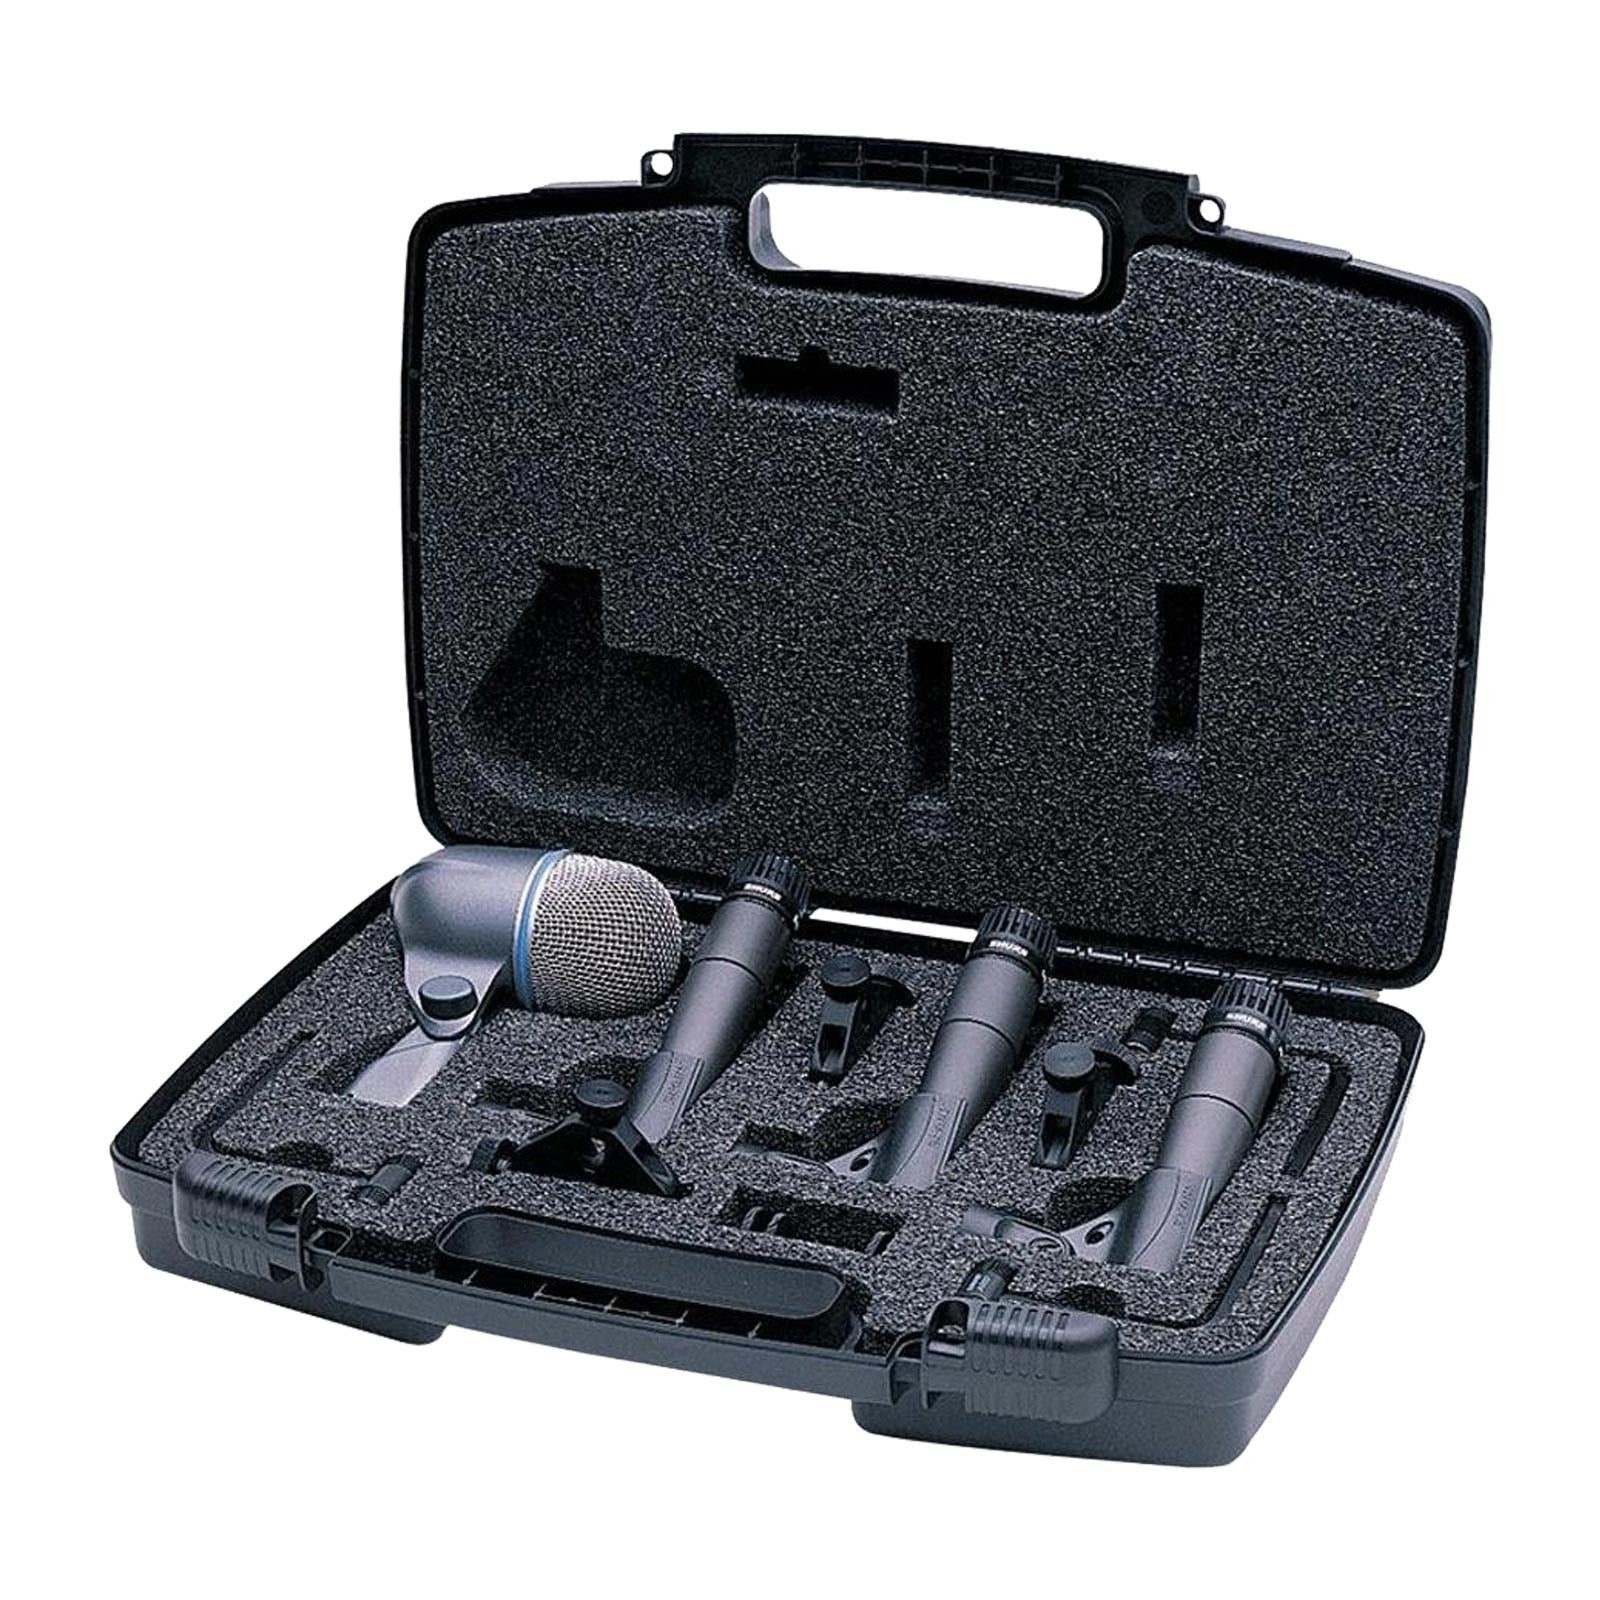 DMK57-52 - Kit de Micrófonos Para Batería Shure - 4 piezas